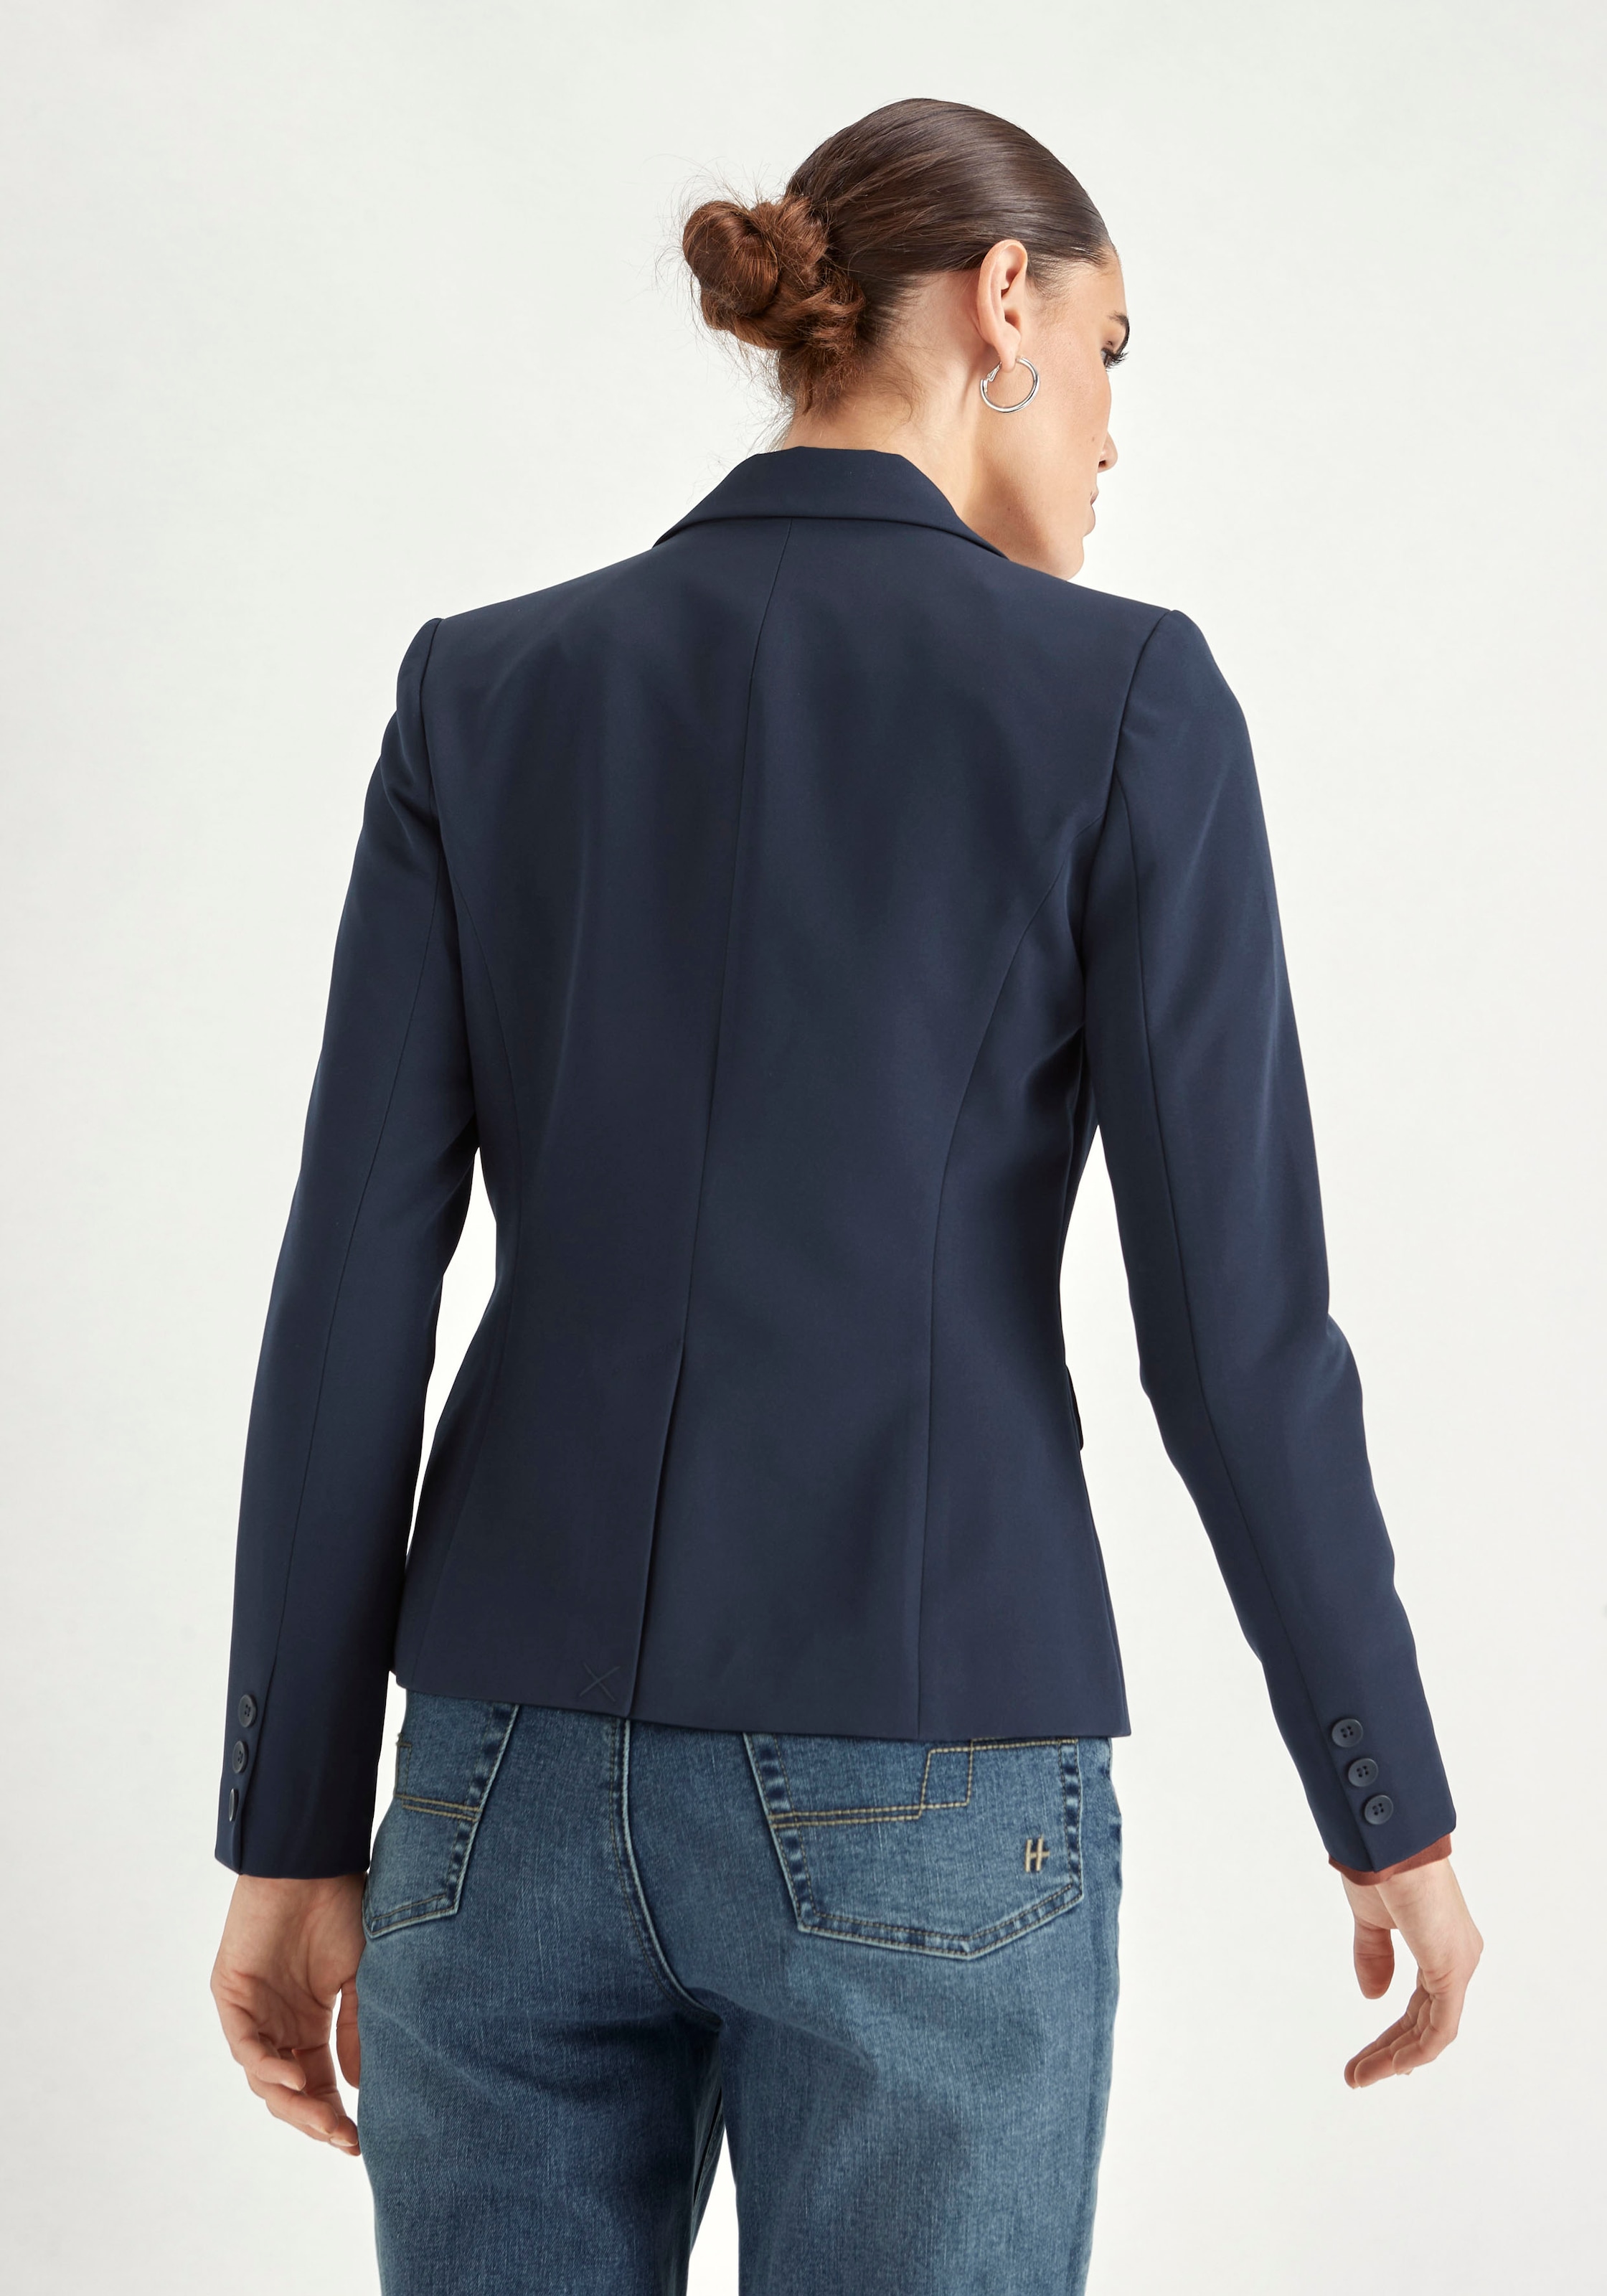 HECHTER PARIS Jackenblazer, mit leichter Schulterpolsterung kaufen bei OTTO | Jackenblazer